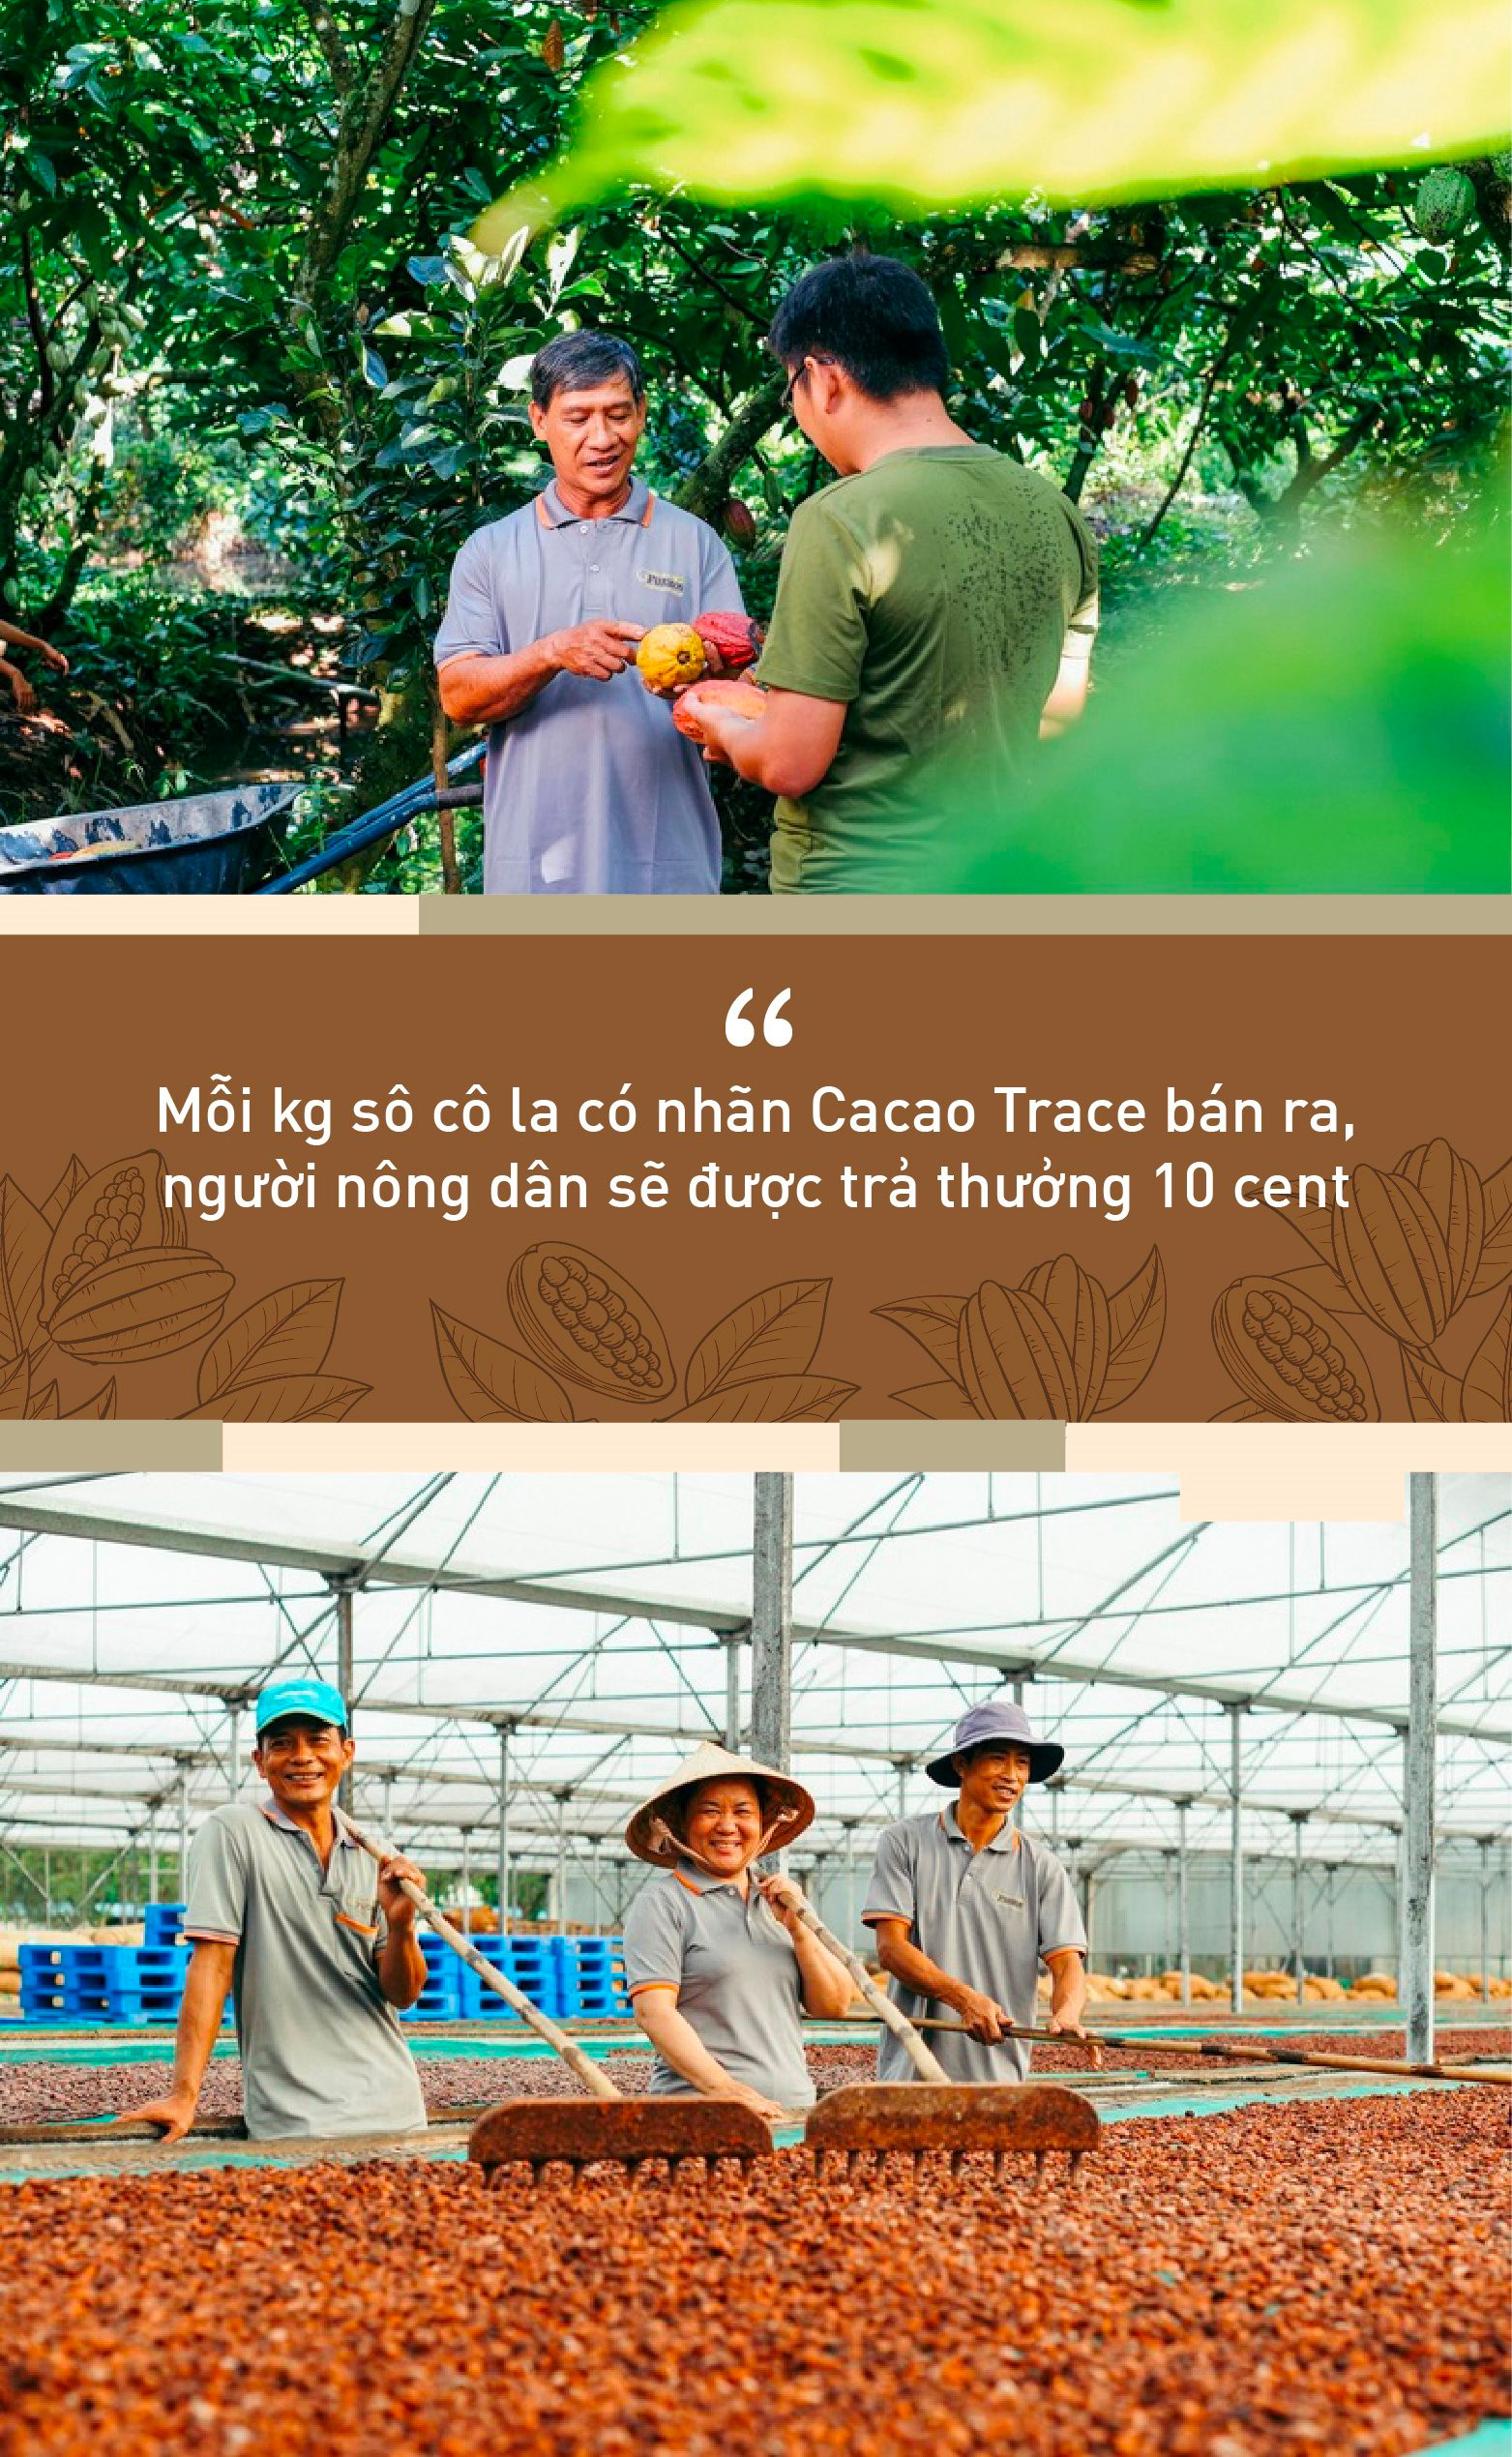 Puratos và hành trình Cacao Trace: “Một thanh sô cô la sẽ kém hấp dẫn nếu người dùng biết được đằng sau đó là giọt nước mắt của người nông dân” - Ảnh 3.